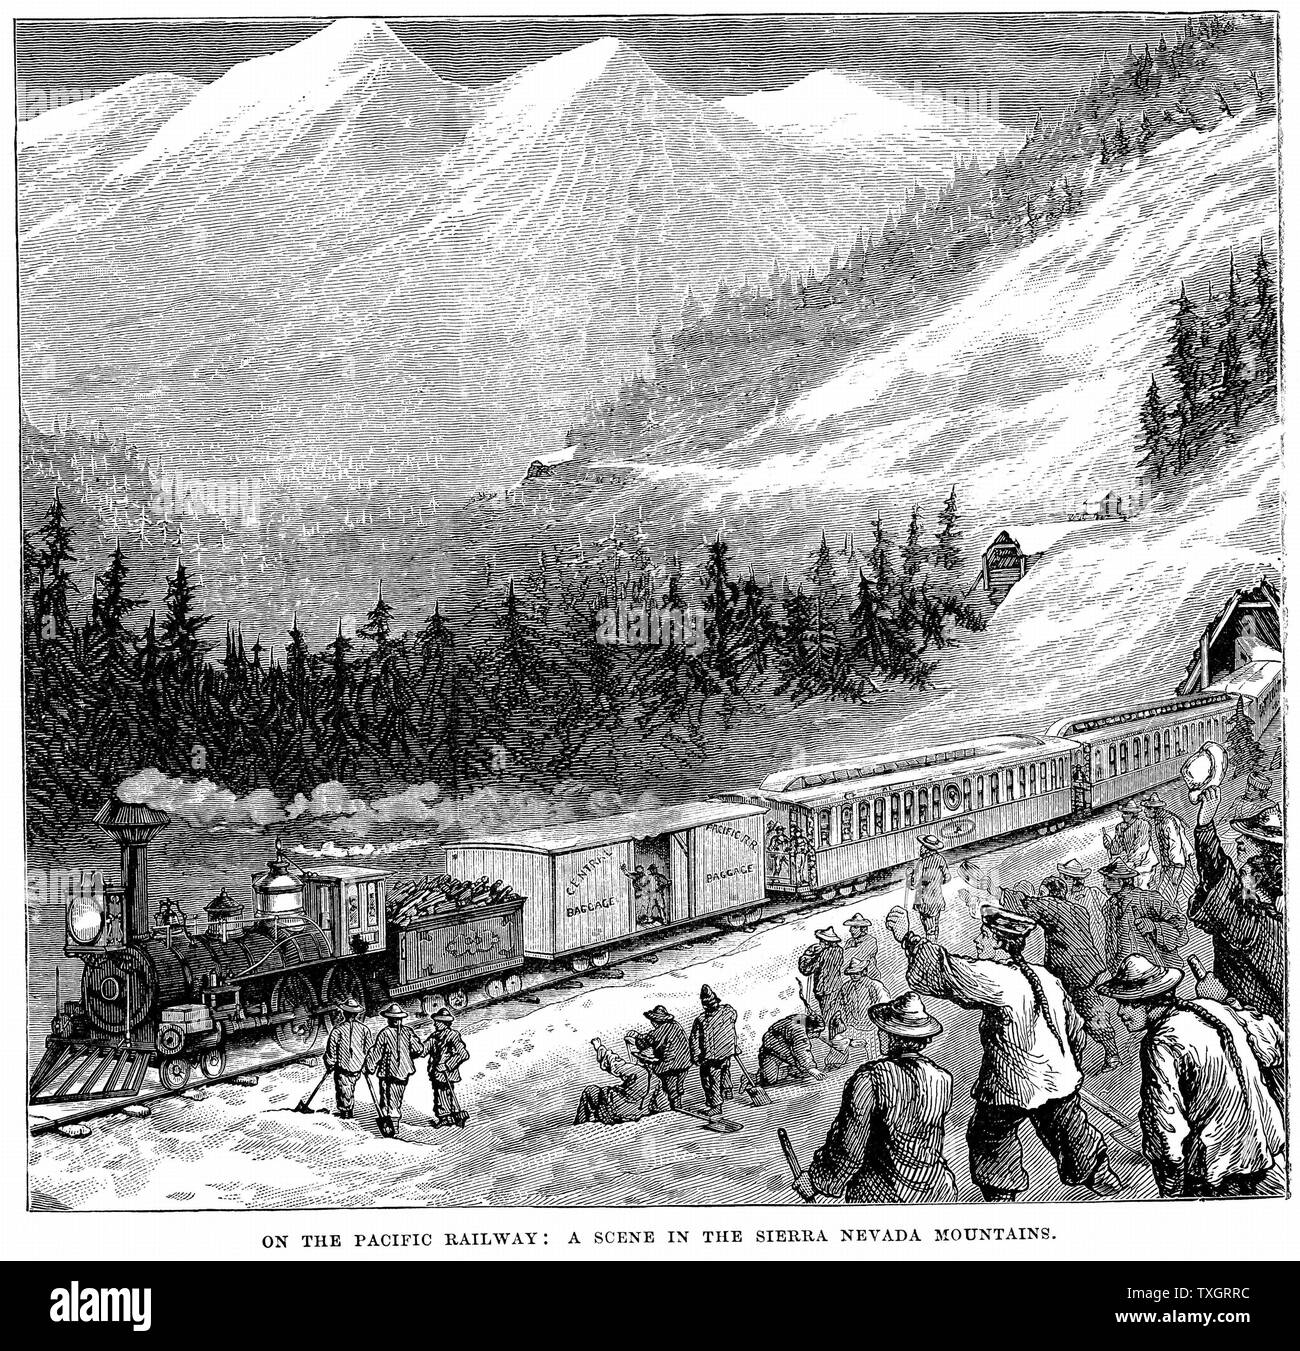 Central Pacific Railroad in die Berge der Sierra Nevada. Zug durch die Eisenbahnarbeiter, einschließlich der chinesischen Arbeiter angefeuert. c 1875 Holzstich Stockfoto